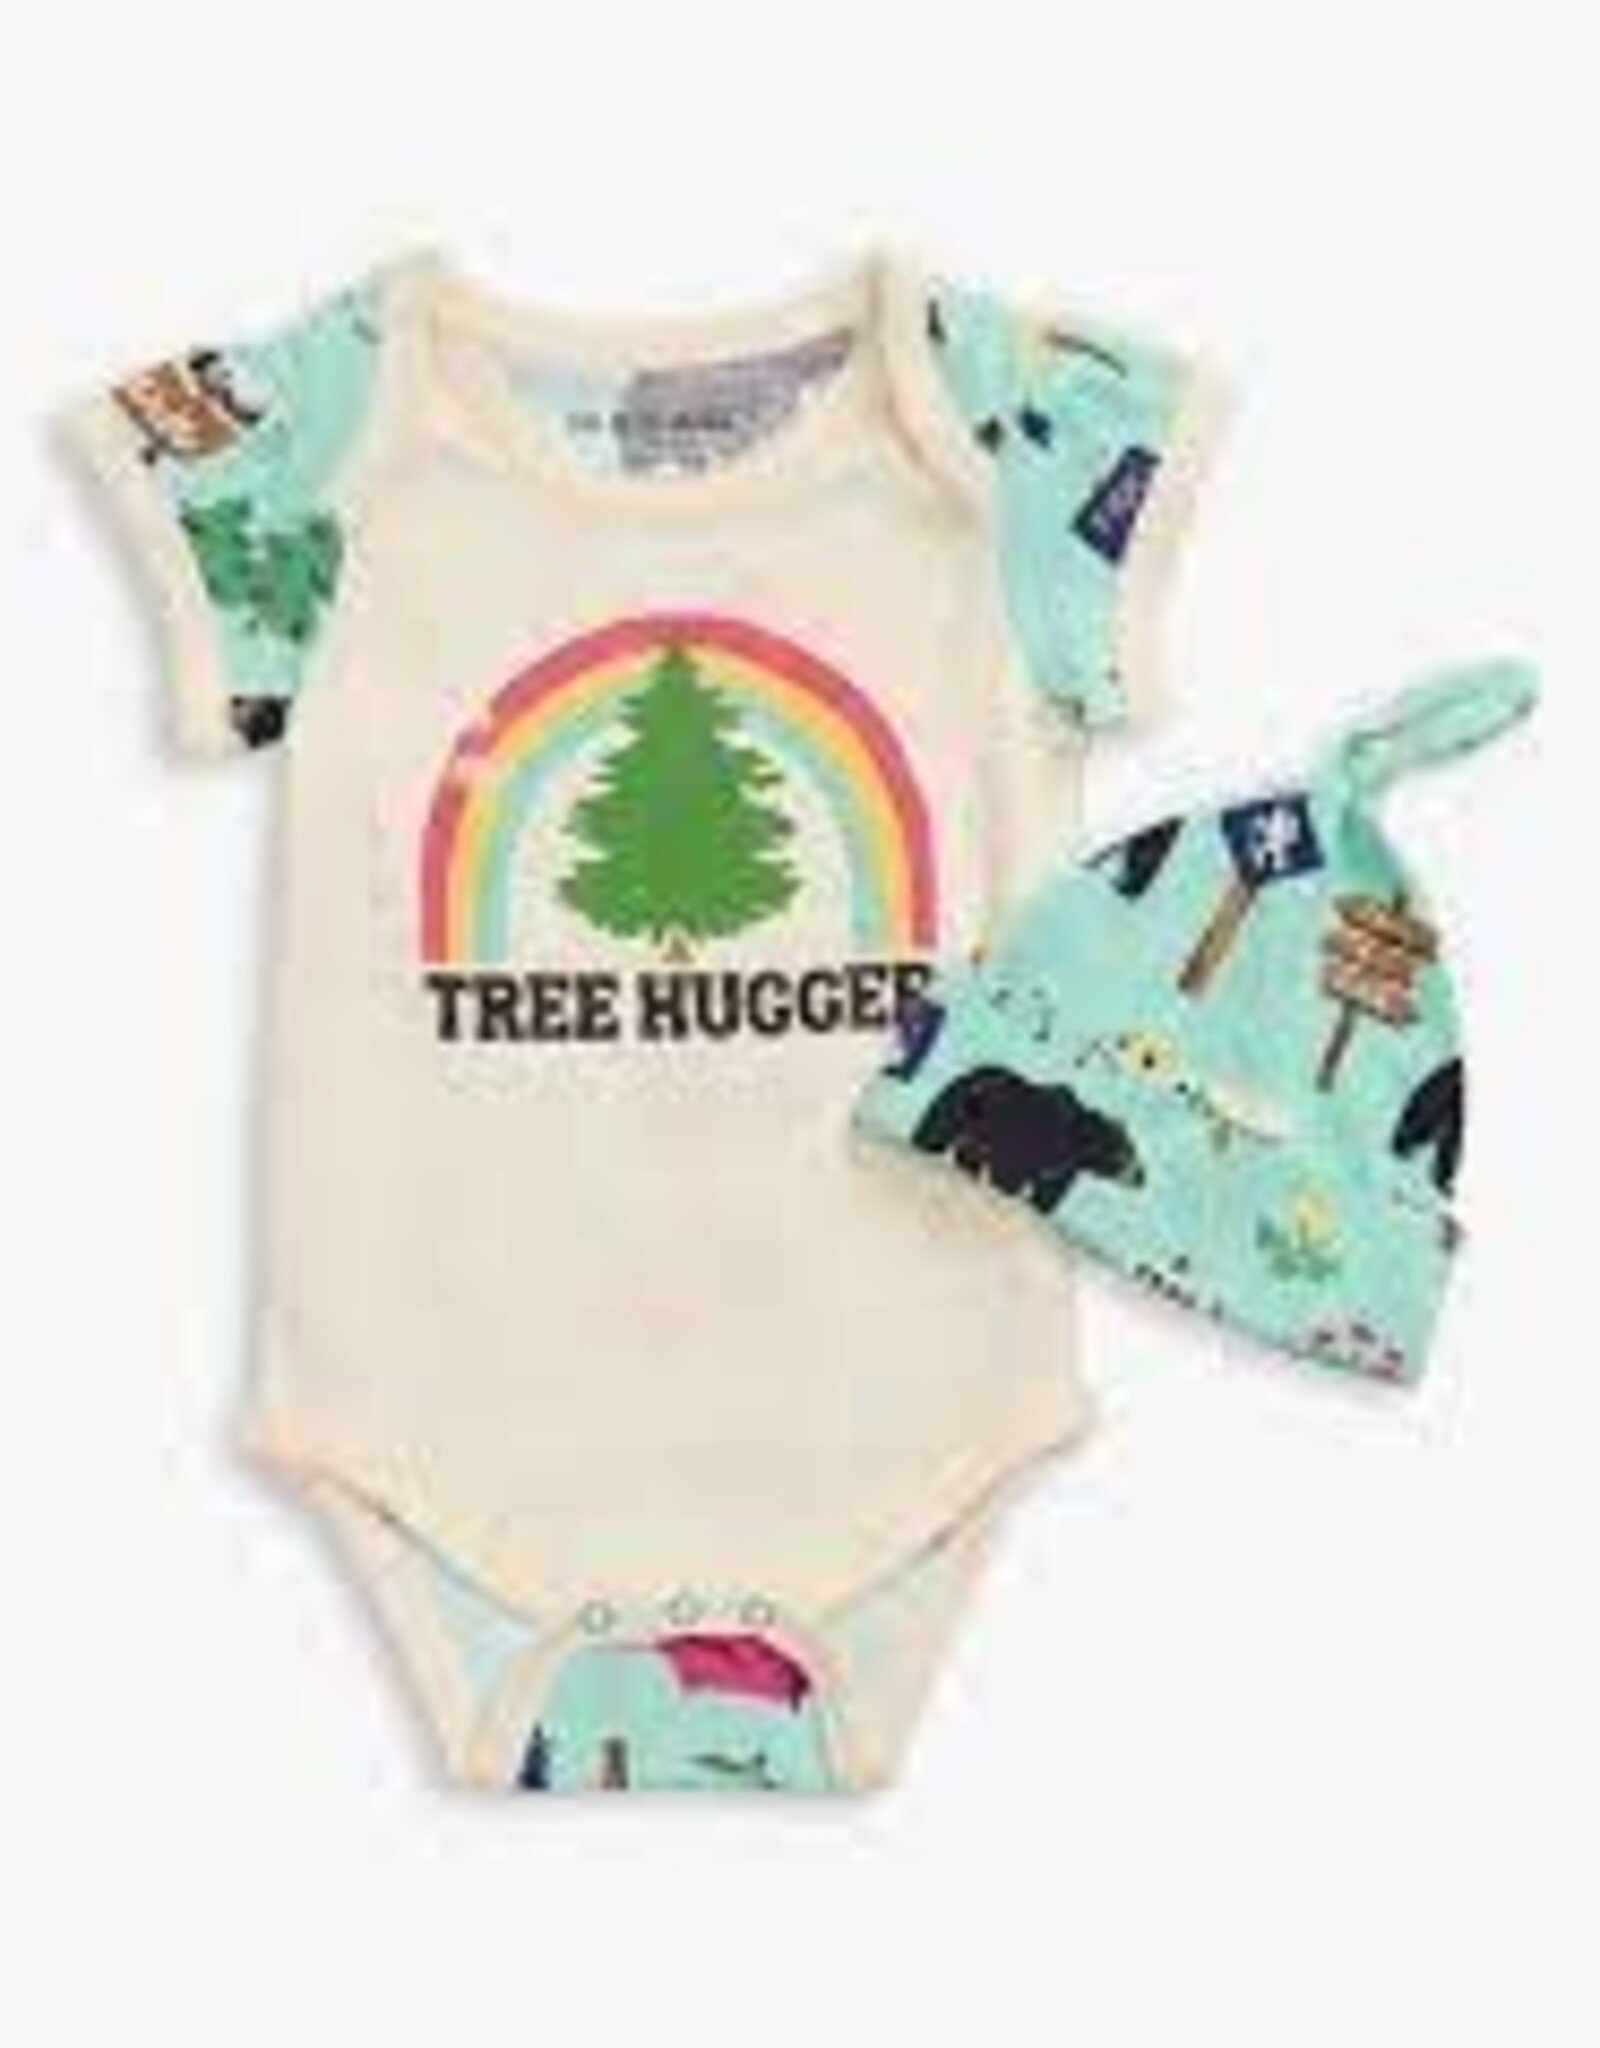 Kids Hatley - Tree Hugger Baby Bodysuit w/Hat (12-18)